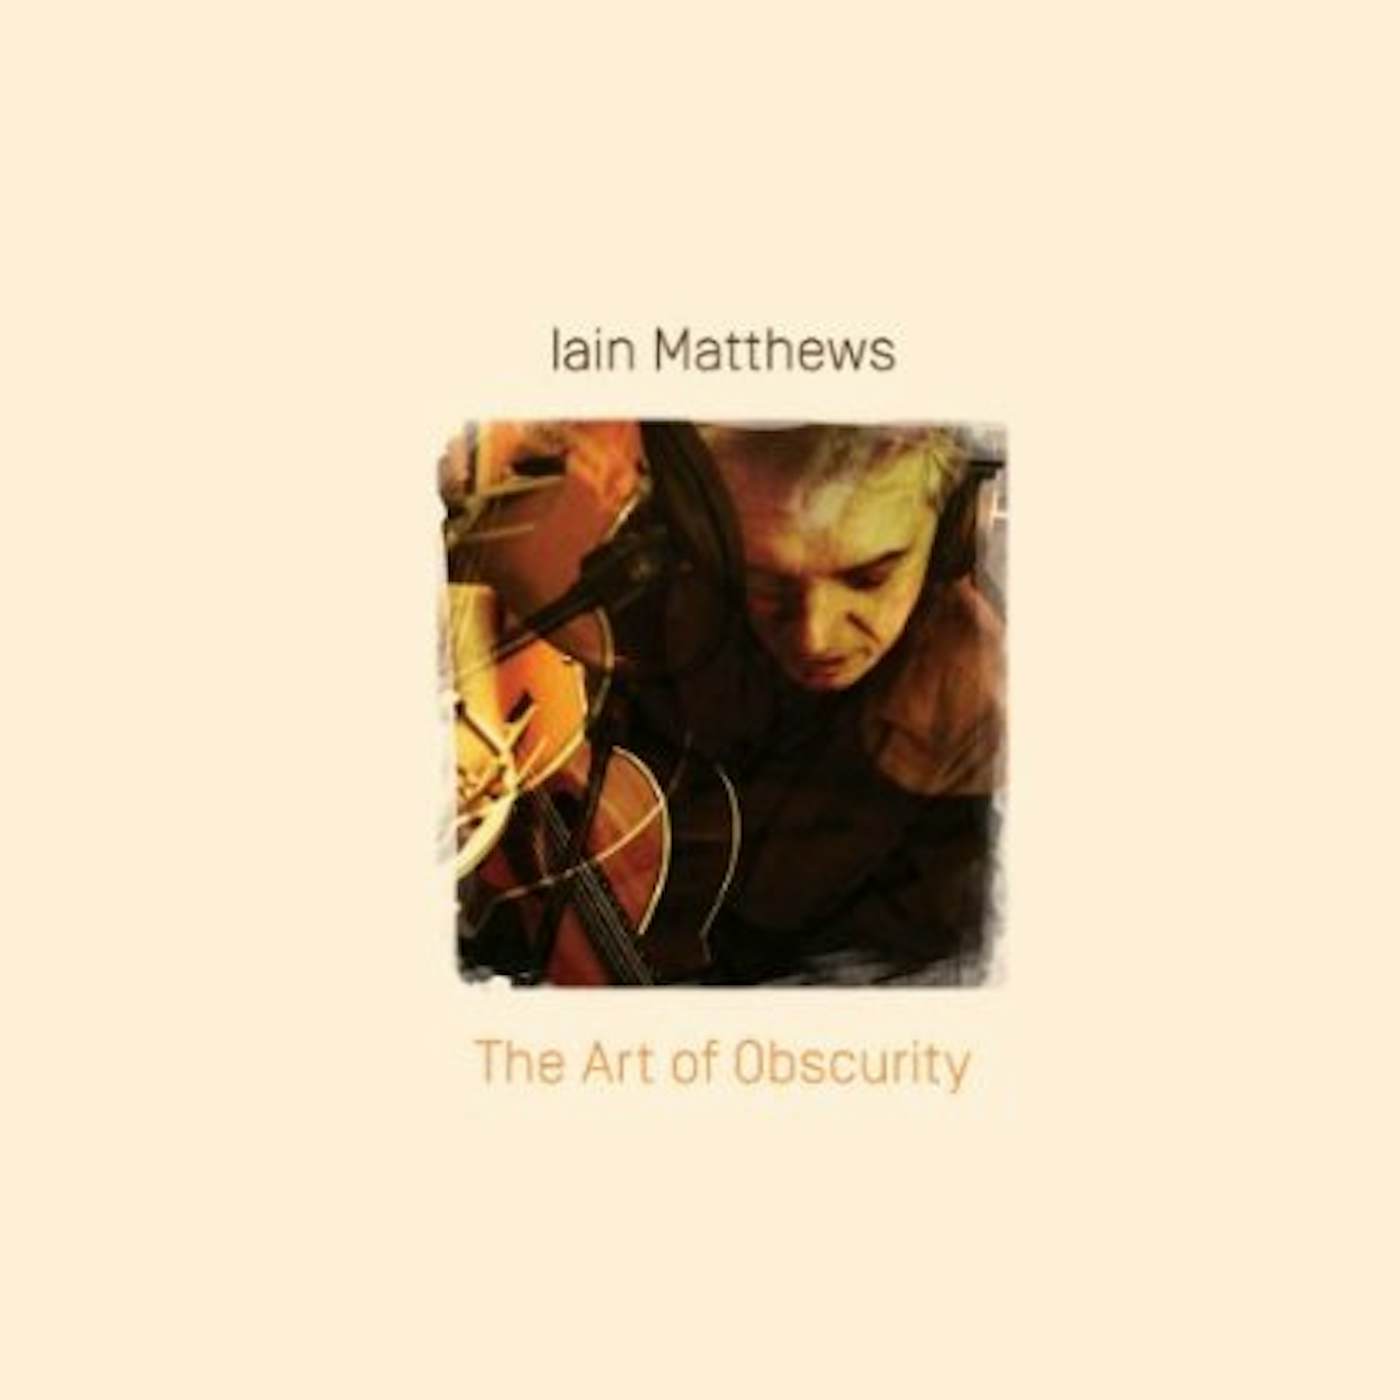 Iain Matthews ART OF OBSCURITY CD